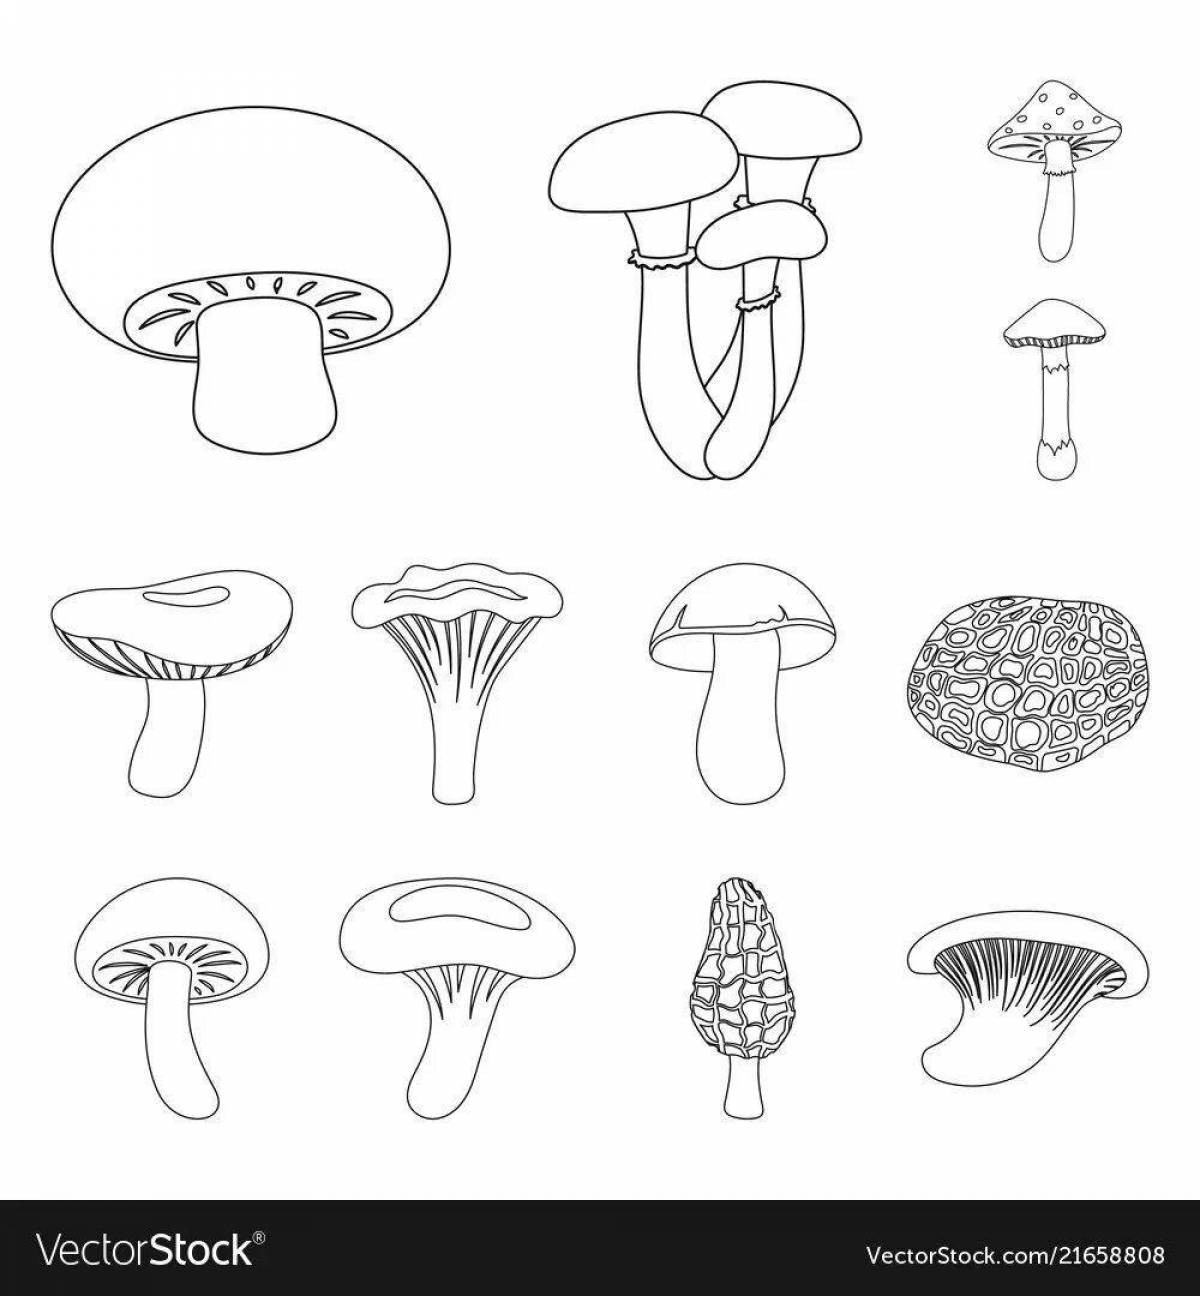 Фото Заманчивая раскраска съедобные грибы